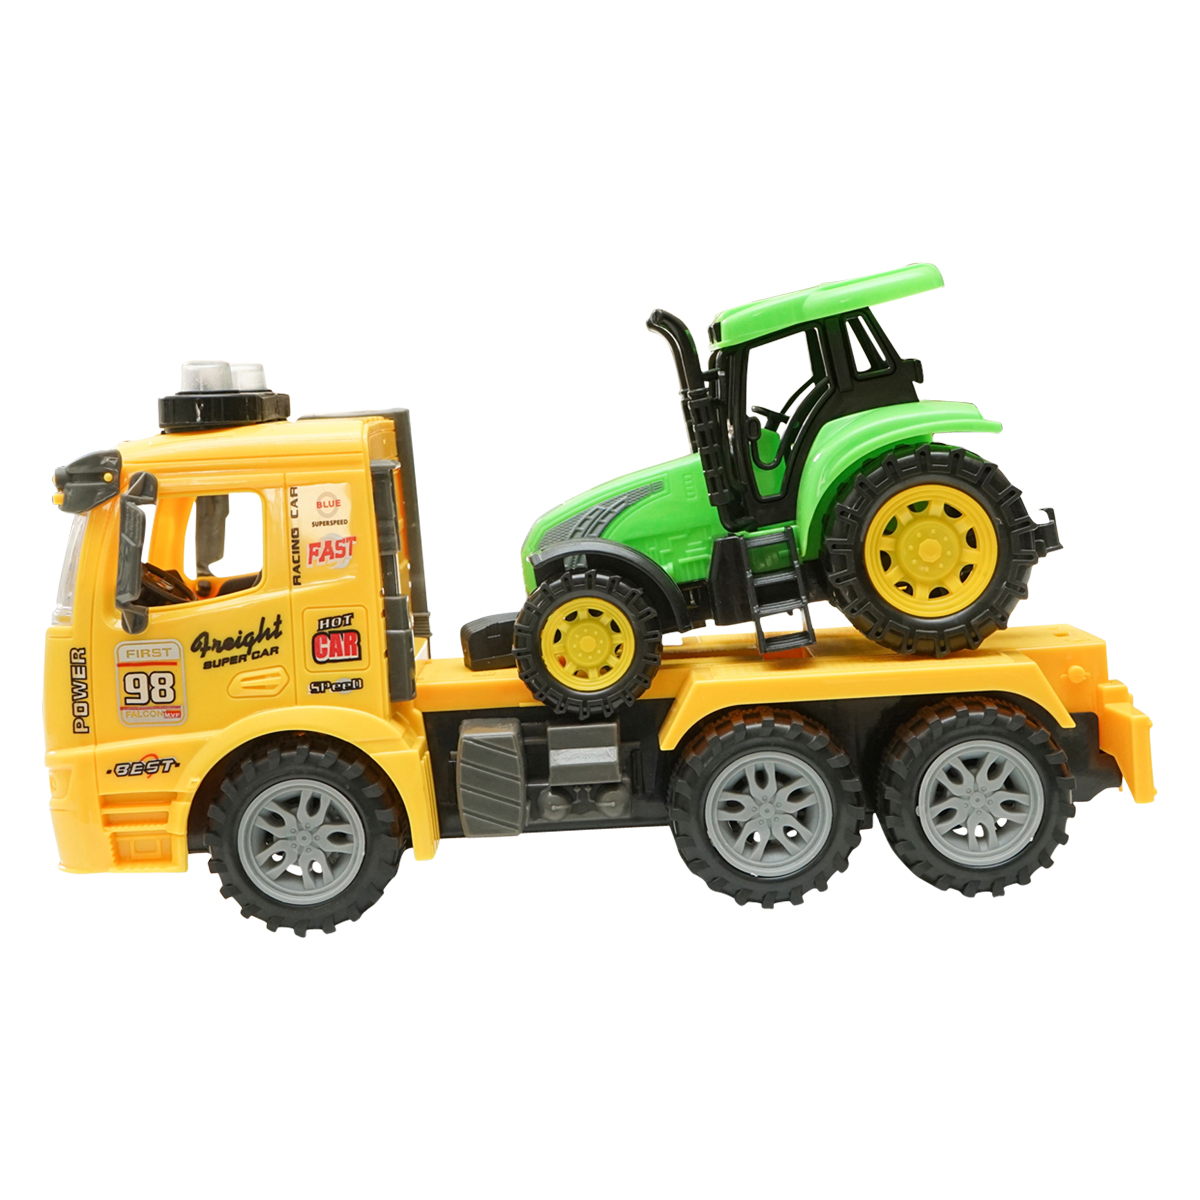 Camion galben cu detalii autentice de tip trailer pe baterii impreuna cu tractor verde de jucarie